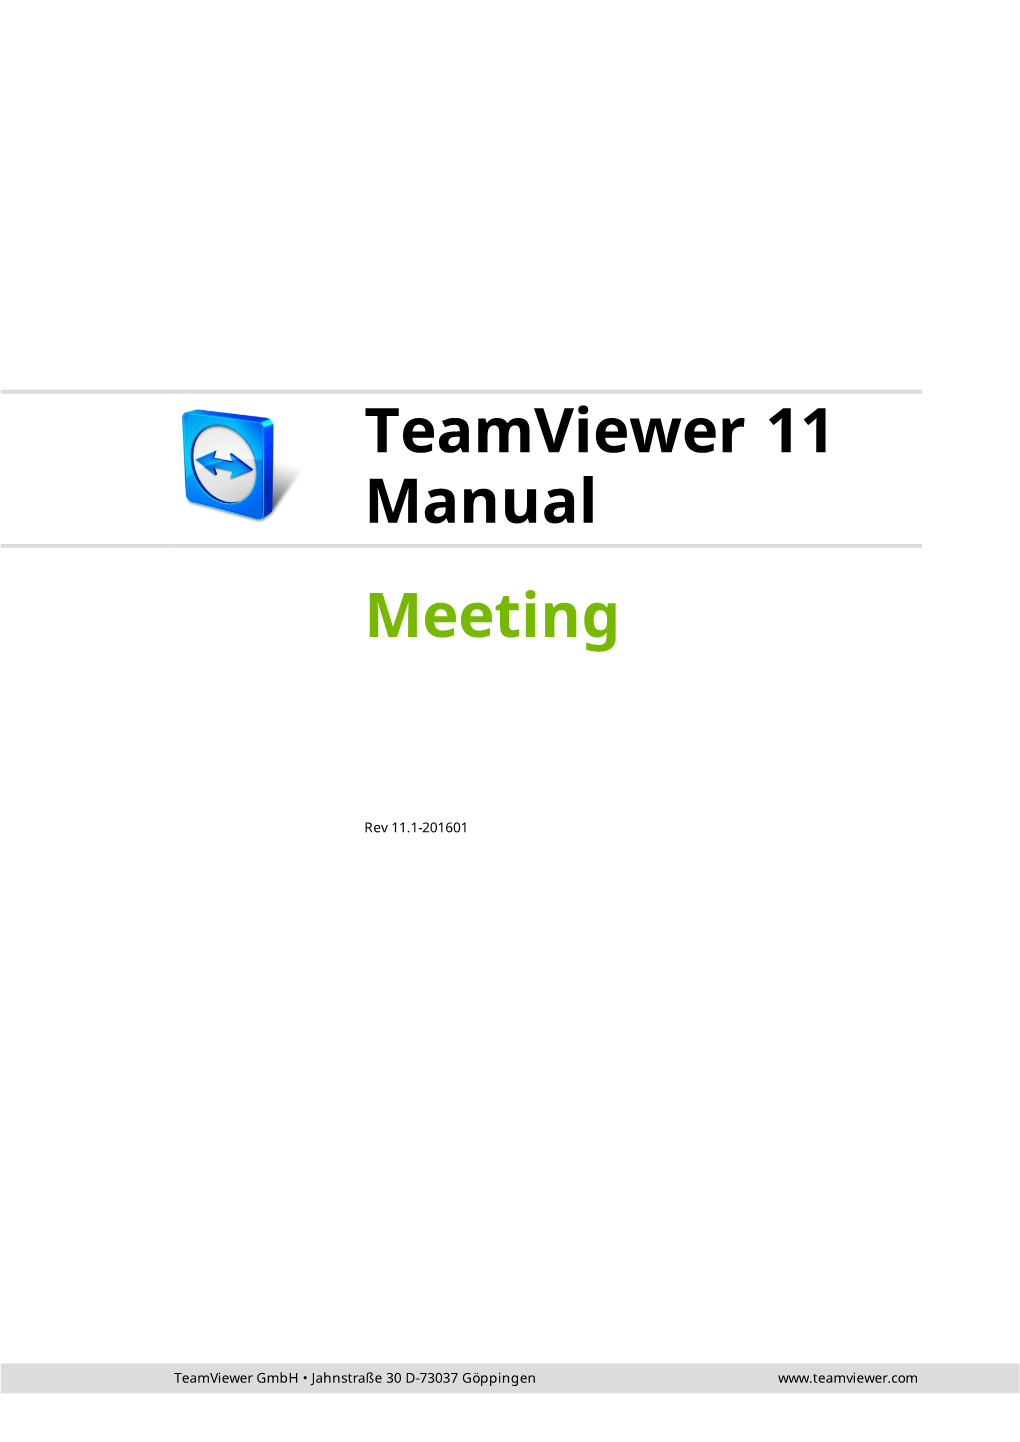 Teamviewer Manual – Meeting